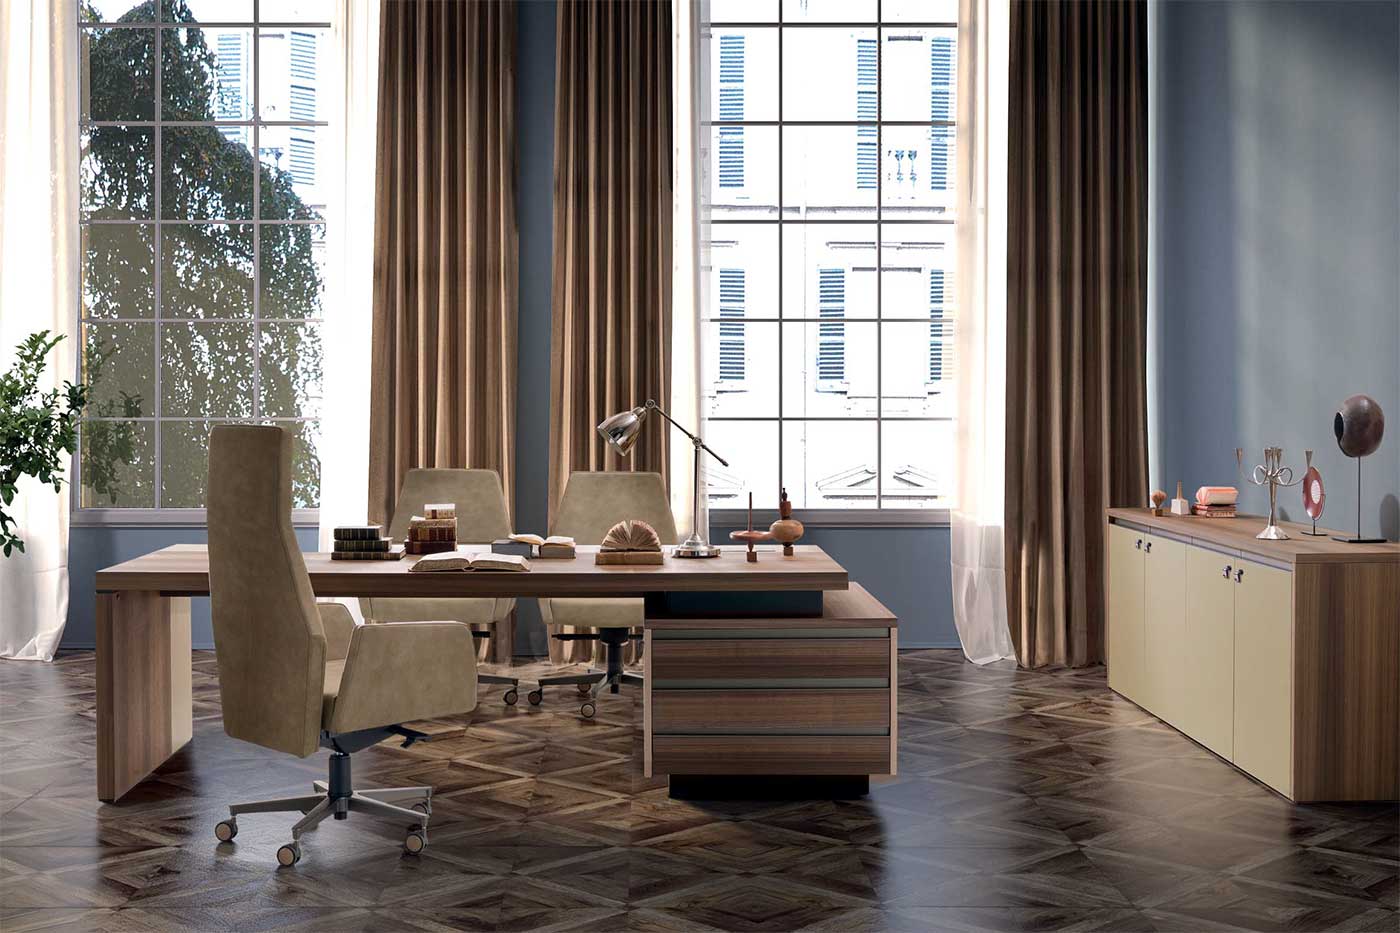 Legno e cuoio, elementi caldi ed eleganti, rifiniscono la scrivania direzionale Kefa di Matteo Nunziati. Arredamento da ufficio lussuoso ed esclusivo.